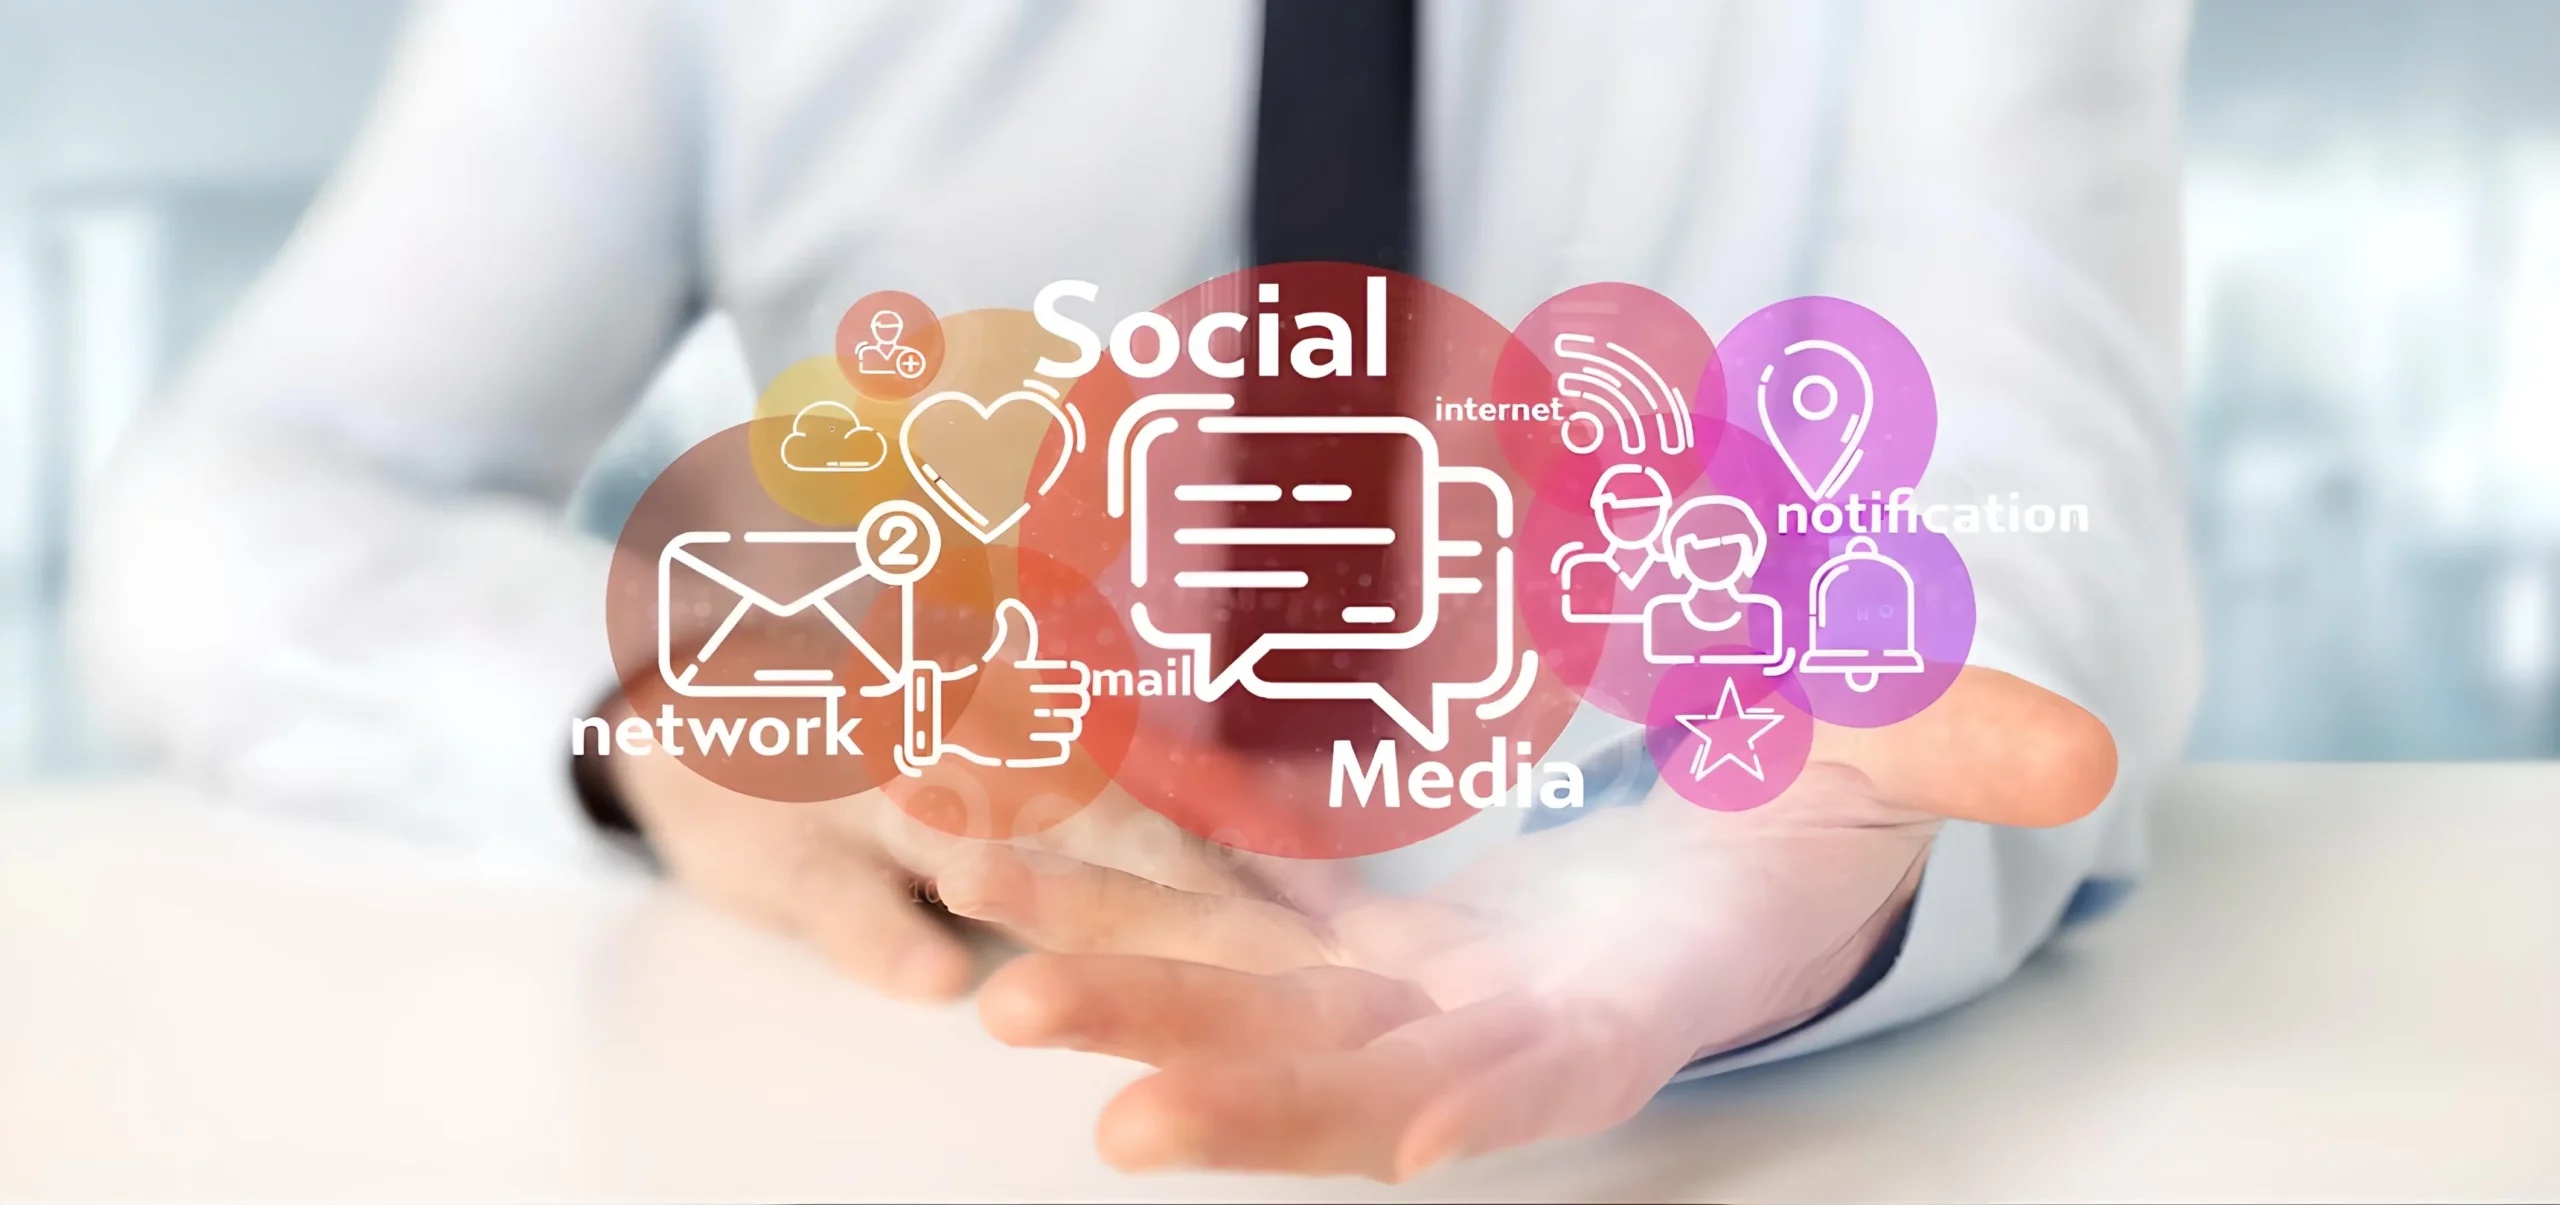 Al momento stai visualizzando Come utilizzare i social media per promuovere la tua attività e raggiungere i tuoi obiettivi di marketing affidando la gestione dei social media a un professionista